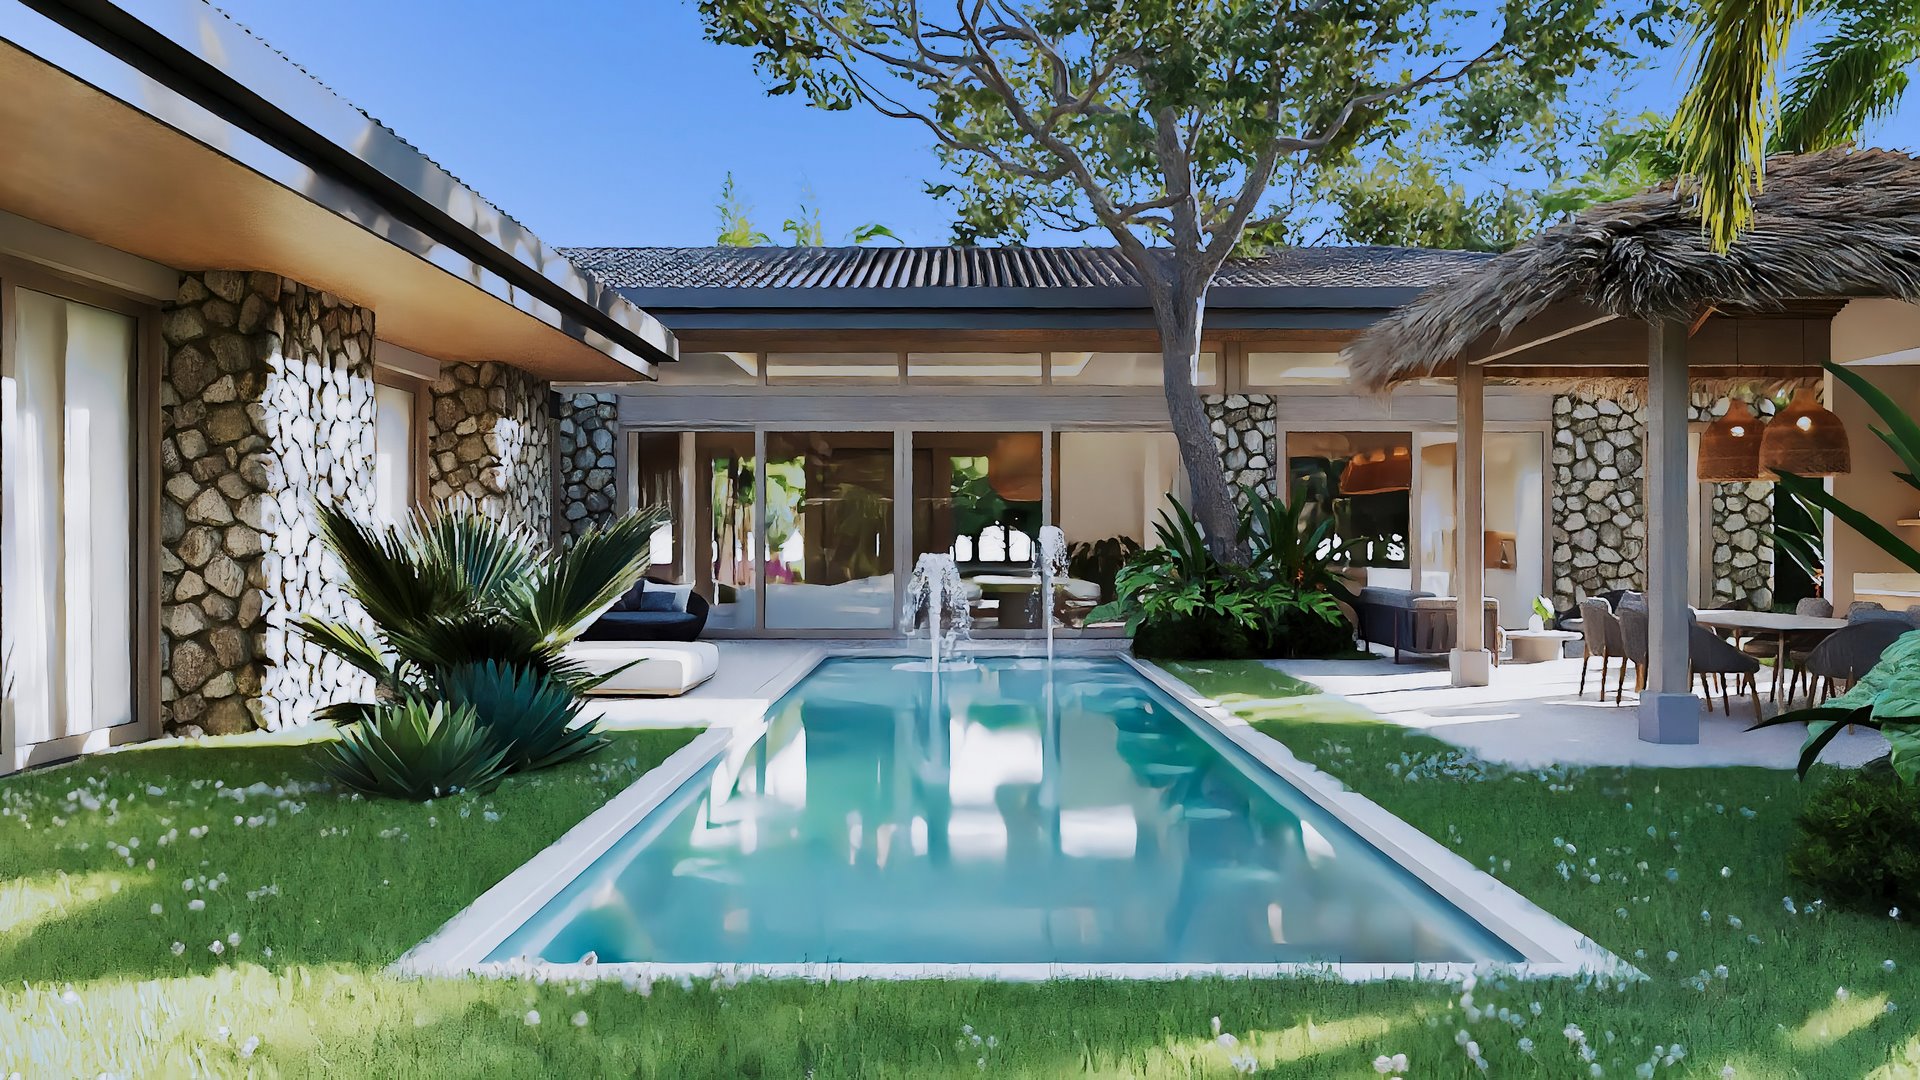 10116-The pool of the home for sale in Hacienda Pinilla, Costa Rica